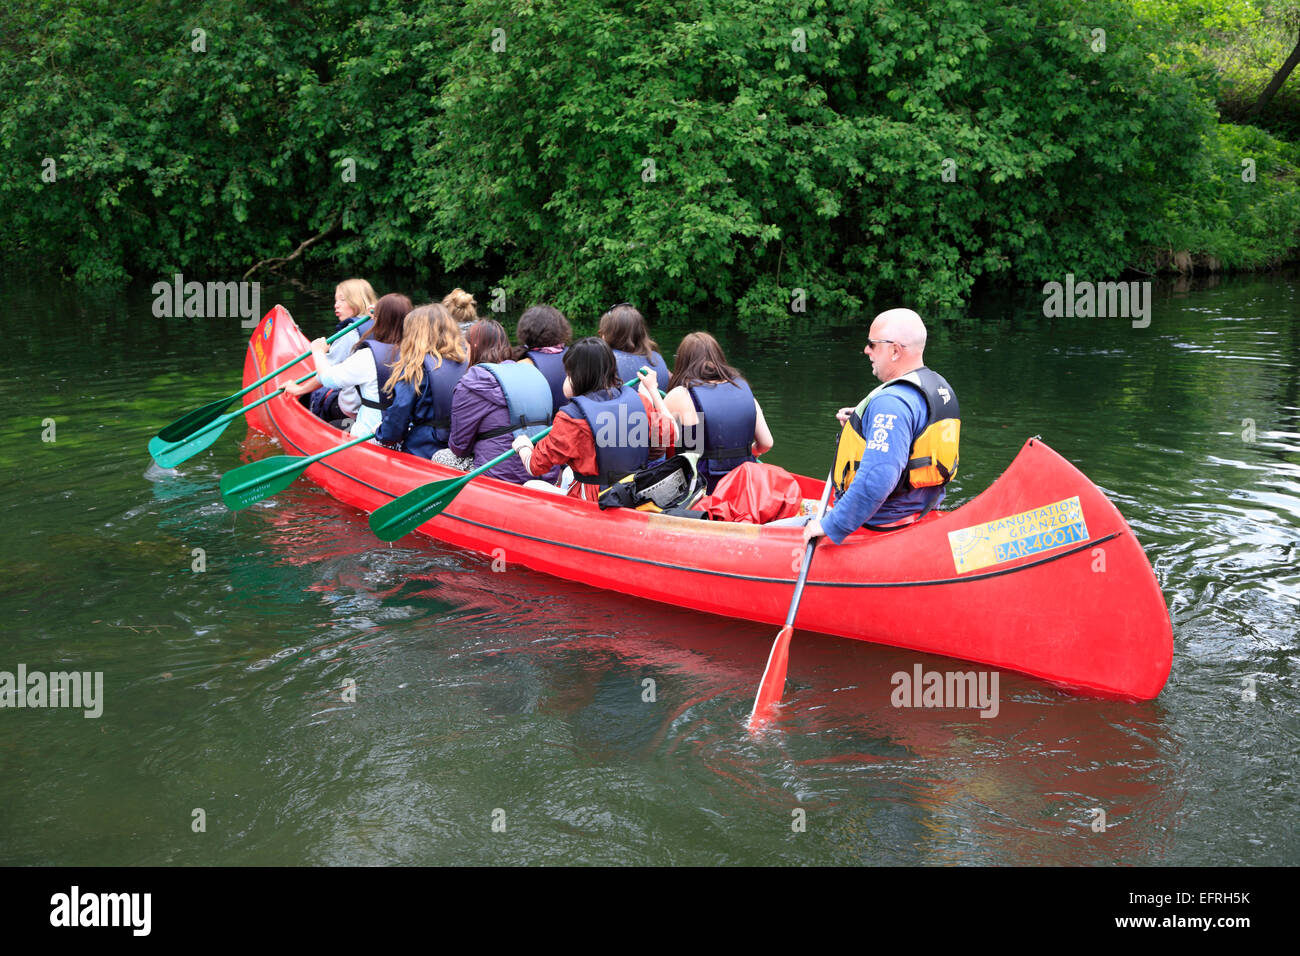 Canoe Tour at Bolter Schleuse (Lock) / Lake Mueritz, Mecklenburg Pomerania, Germany, Europe Stock Photo